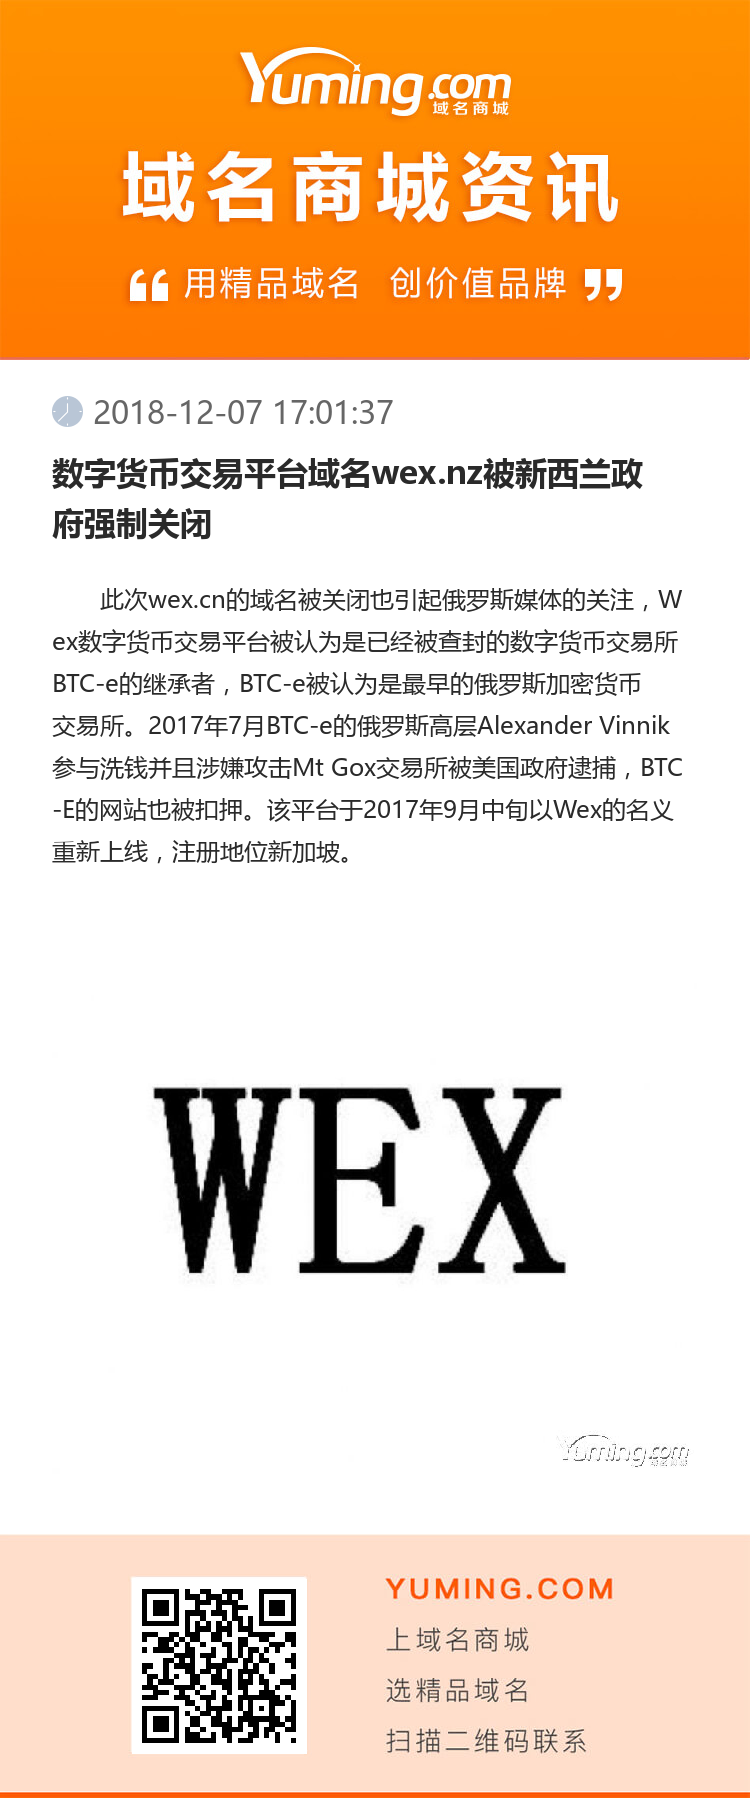 数字货币交易平台域名wex.nz被新西兰政府强制关闭